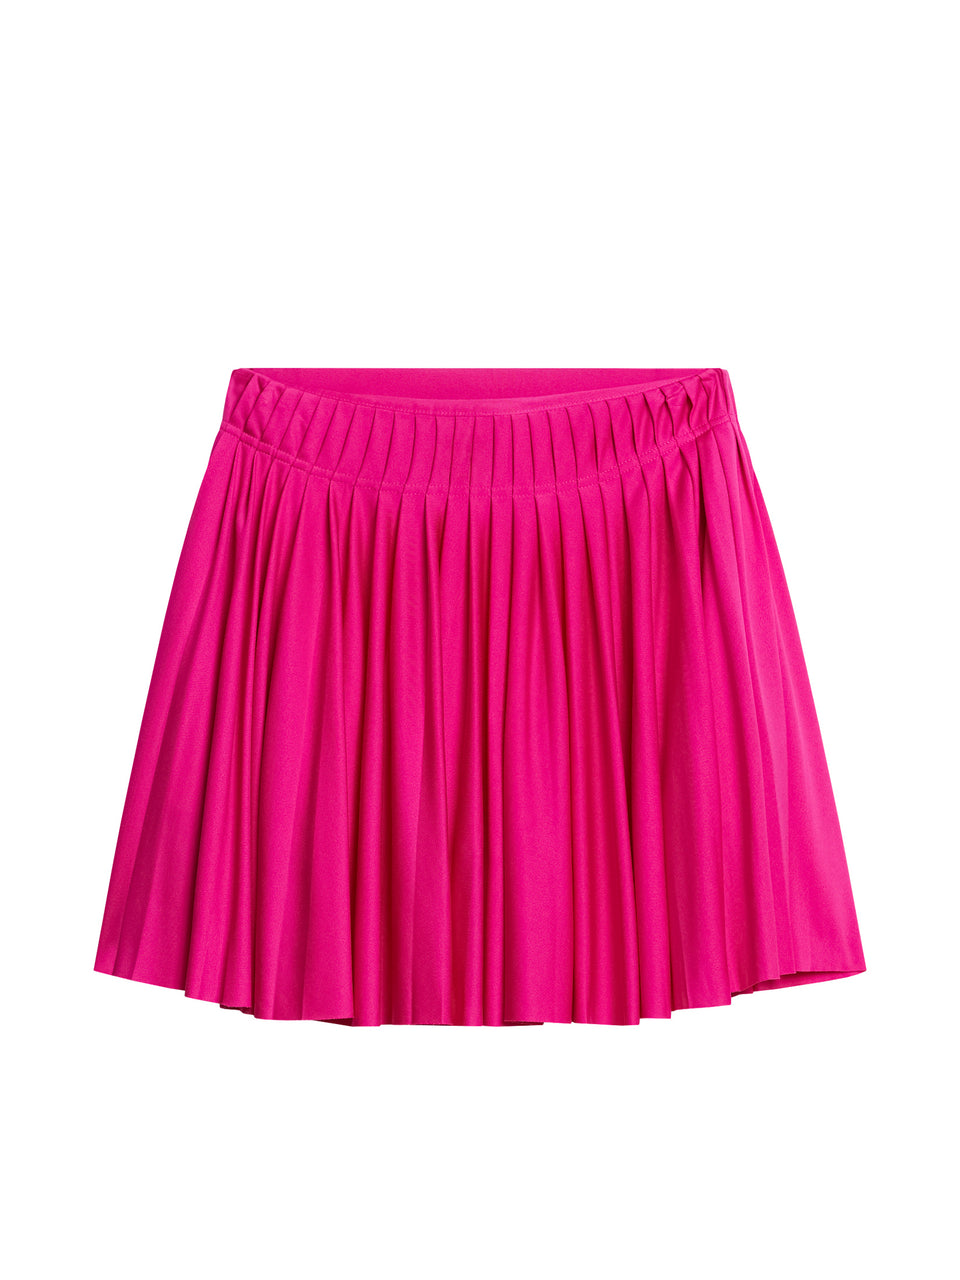 Gayle Skirt / Fuchsia Purple